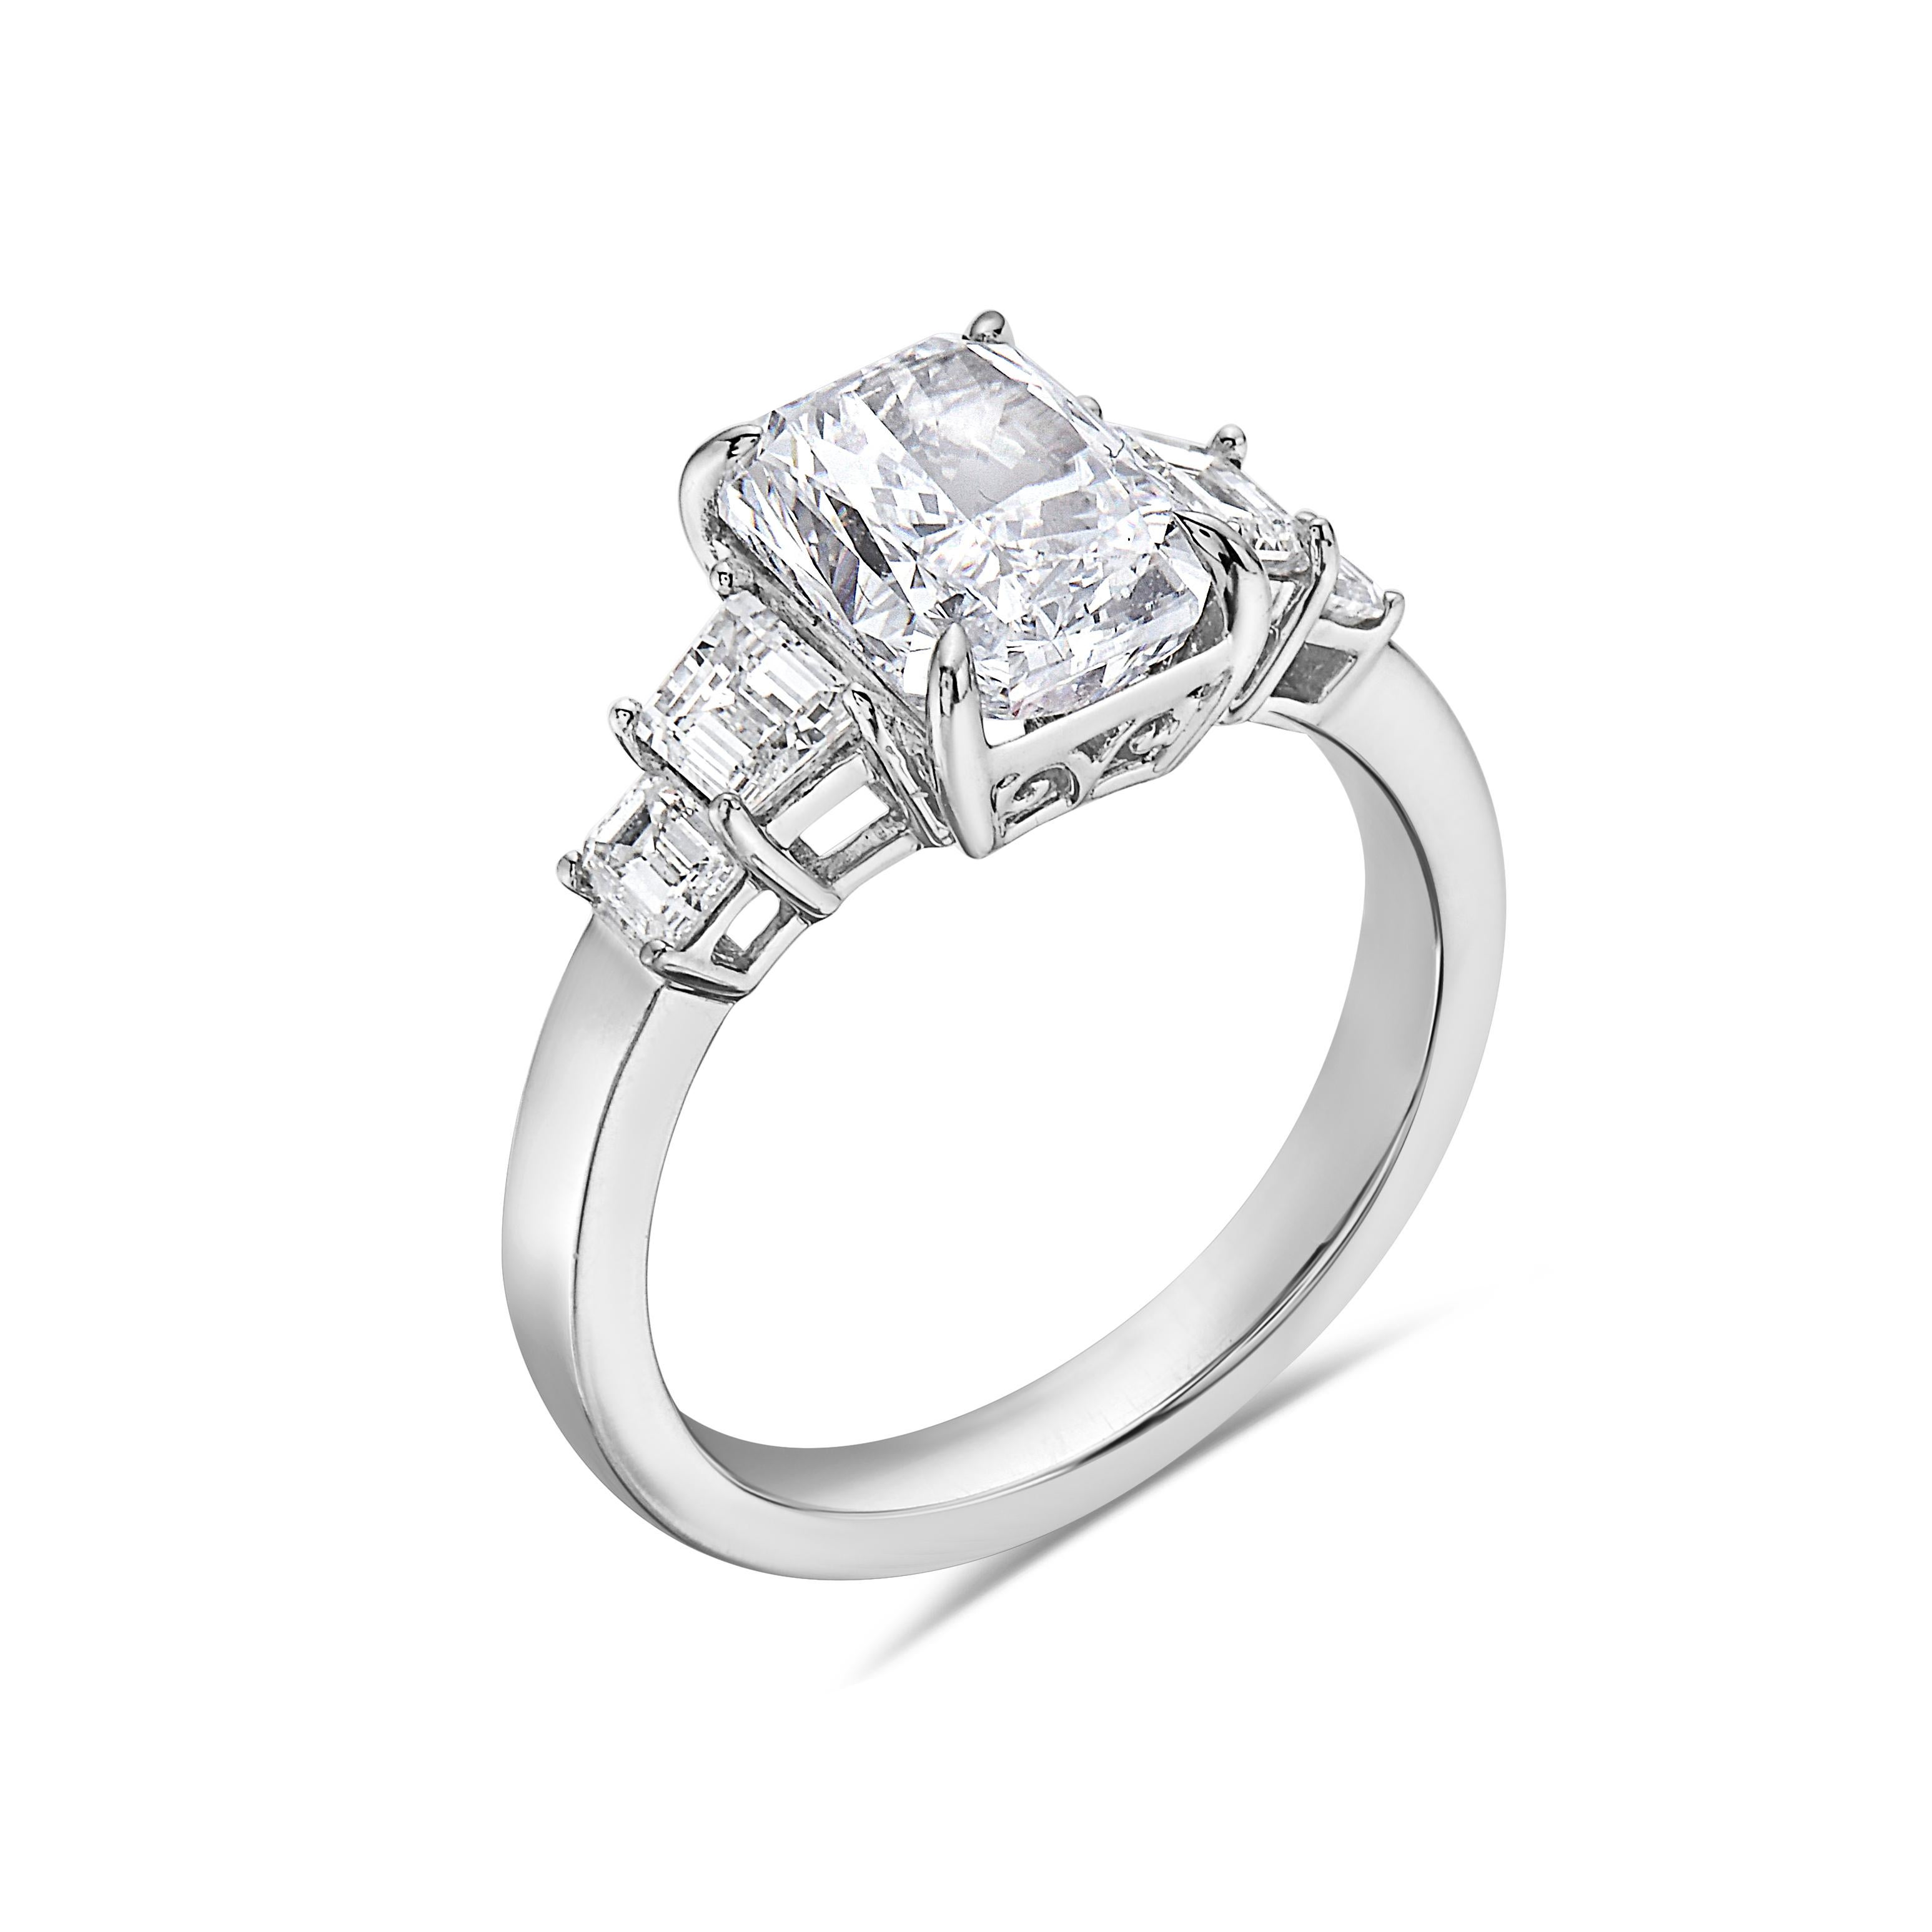 Metall: 18k  Weißgold
Diamant: E Diamantschliff VVS1 
Form des Diamanten: Smaragd-Schliff
Diamant Karat Gesamtgewicht:2.90ctw
Diamant: Weißer Diamant 
Form des Diamanten: Rund
Diamant Karat Gesamtgewicht:0,87 ctw
Größe:7